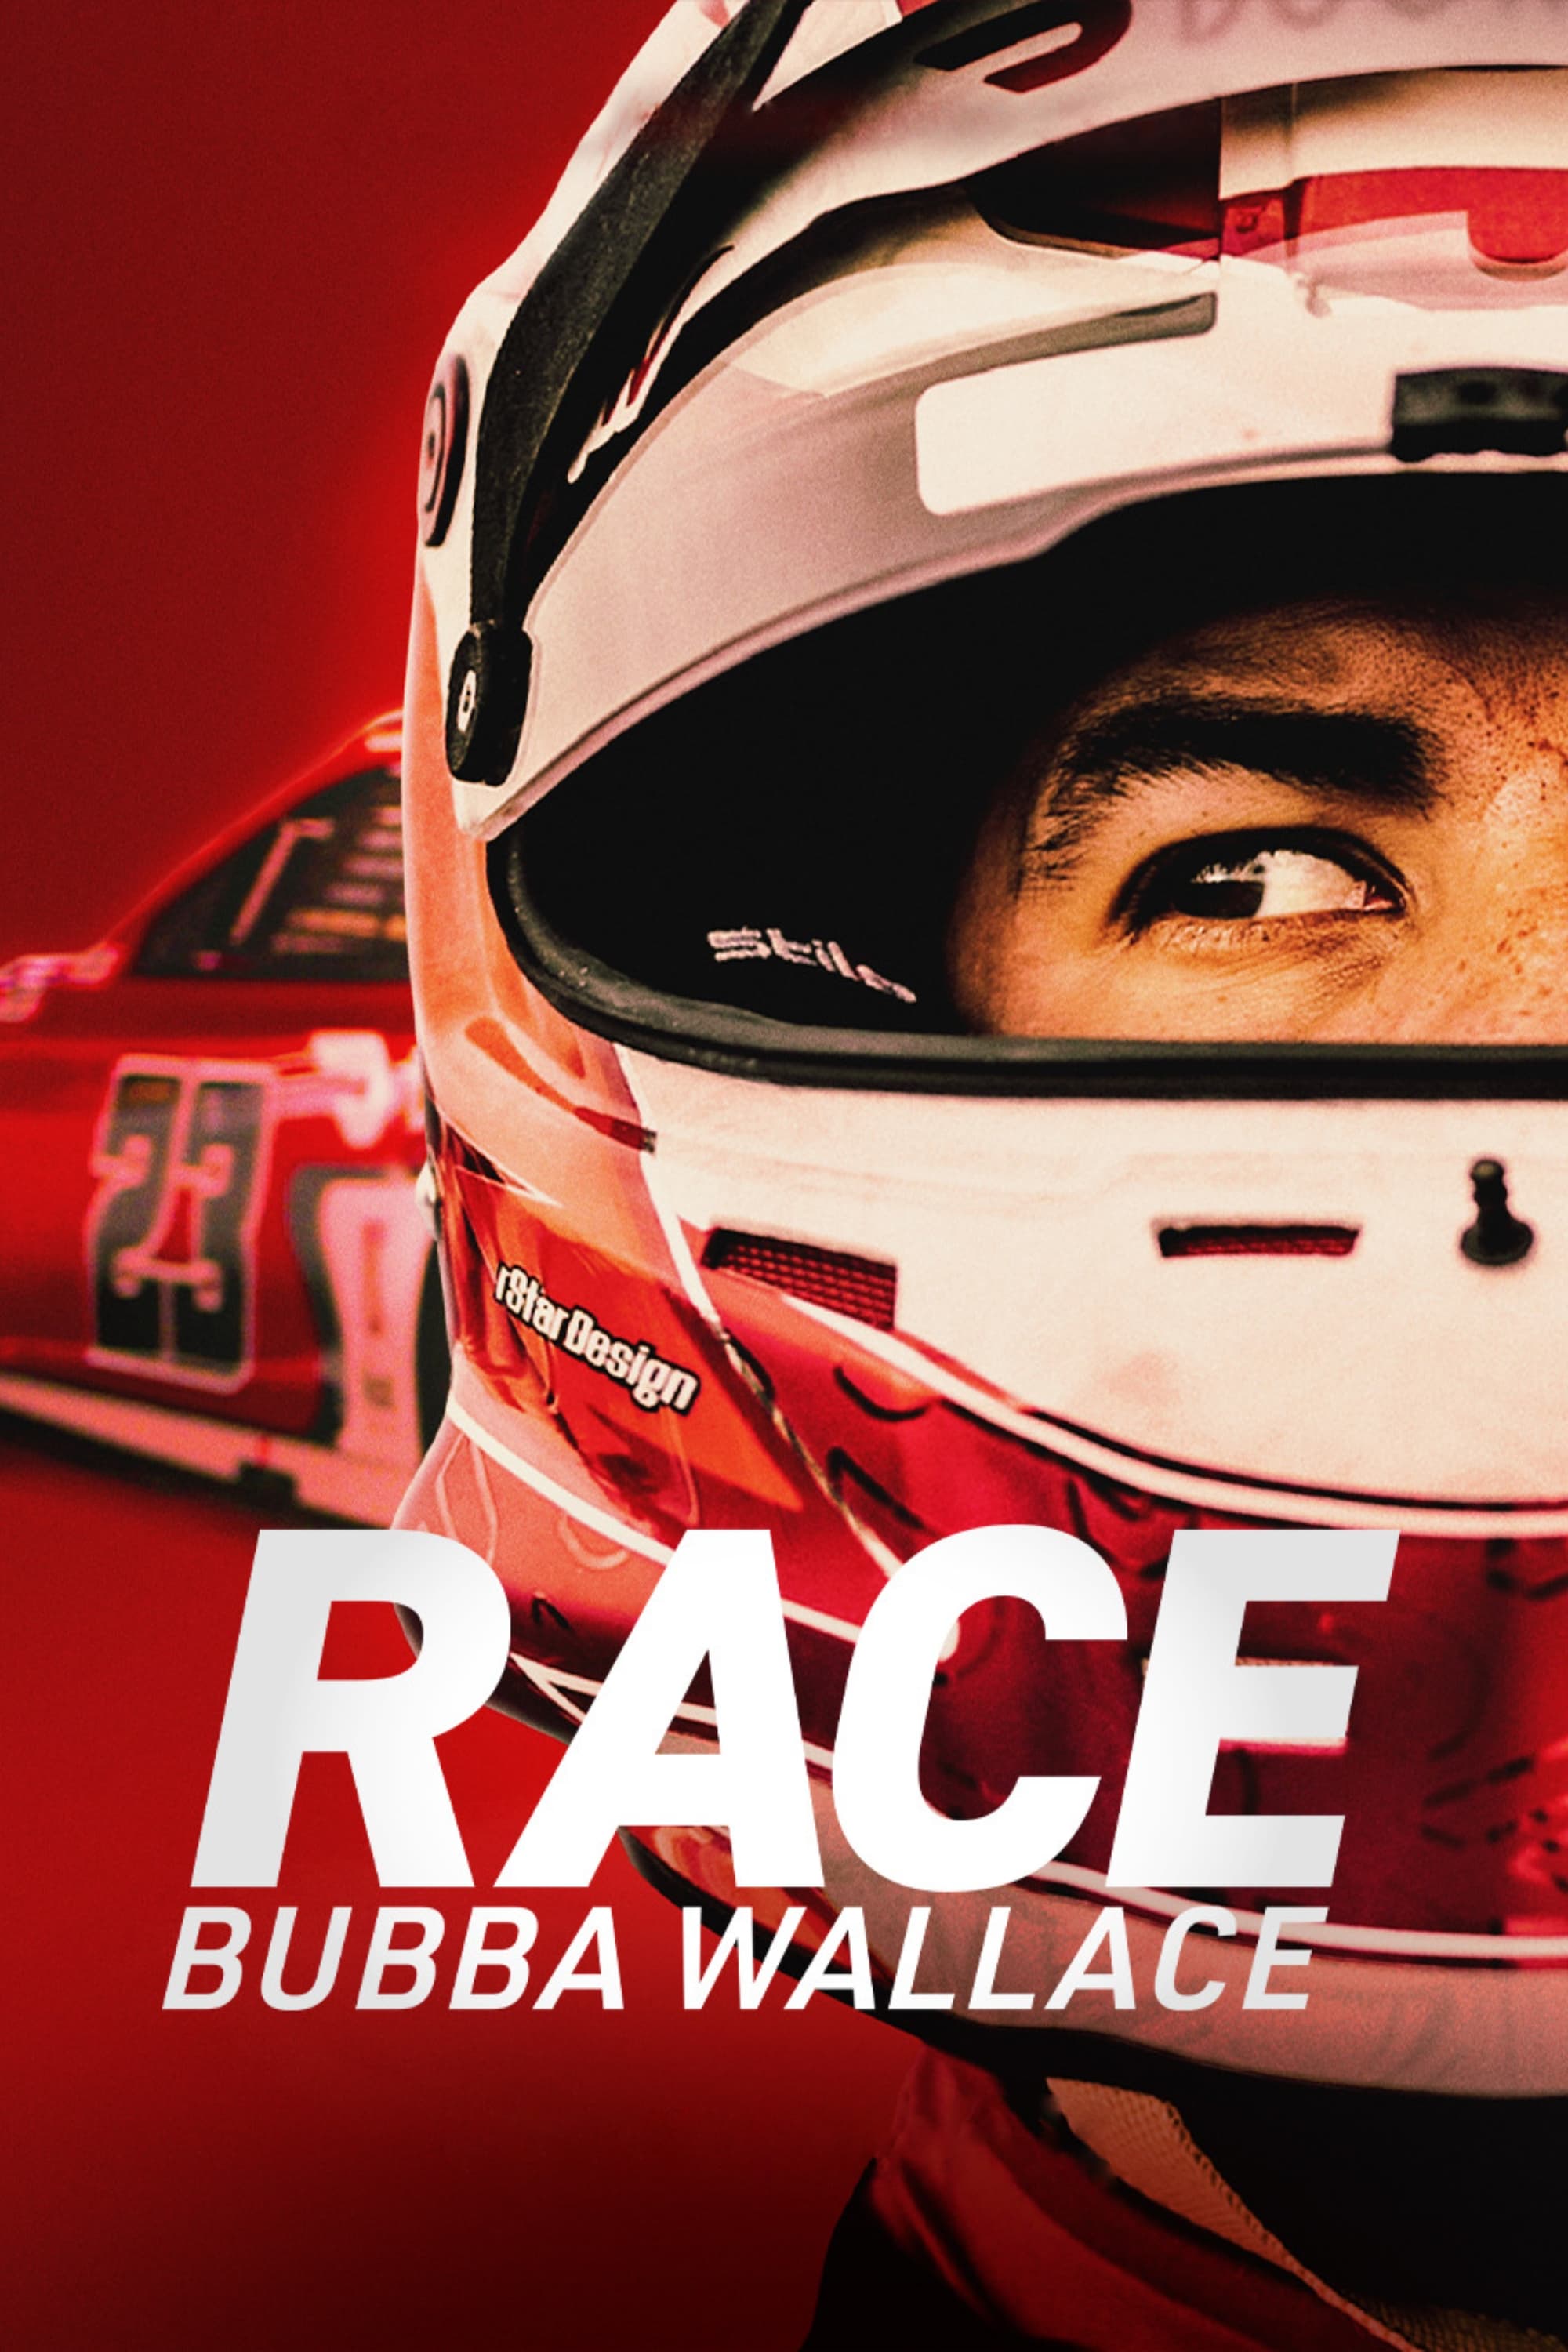 Bubba Wallace: Un piloto de raza